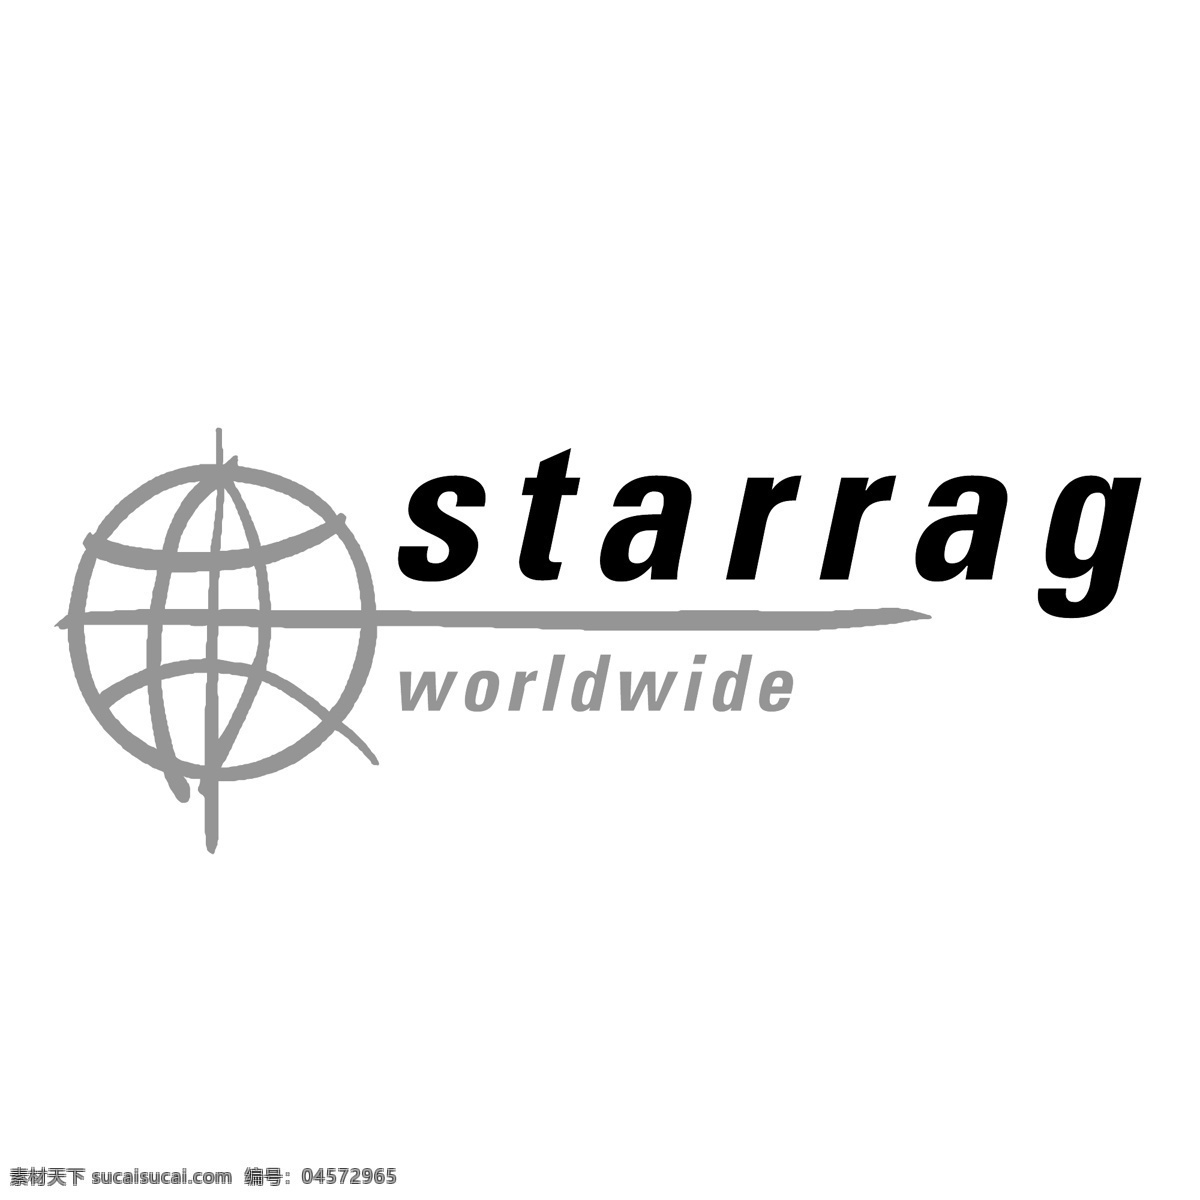 斯达拉特世界 全球 斯达拉特 斯达拉特全球 全世界 载体 自由 世界 全球eps 全世界的标志 标志 矢量 国际快递 矢量图 建筑家居